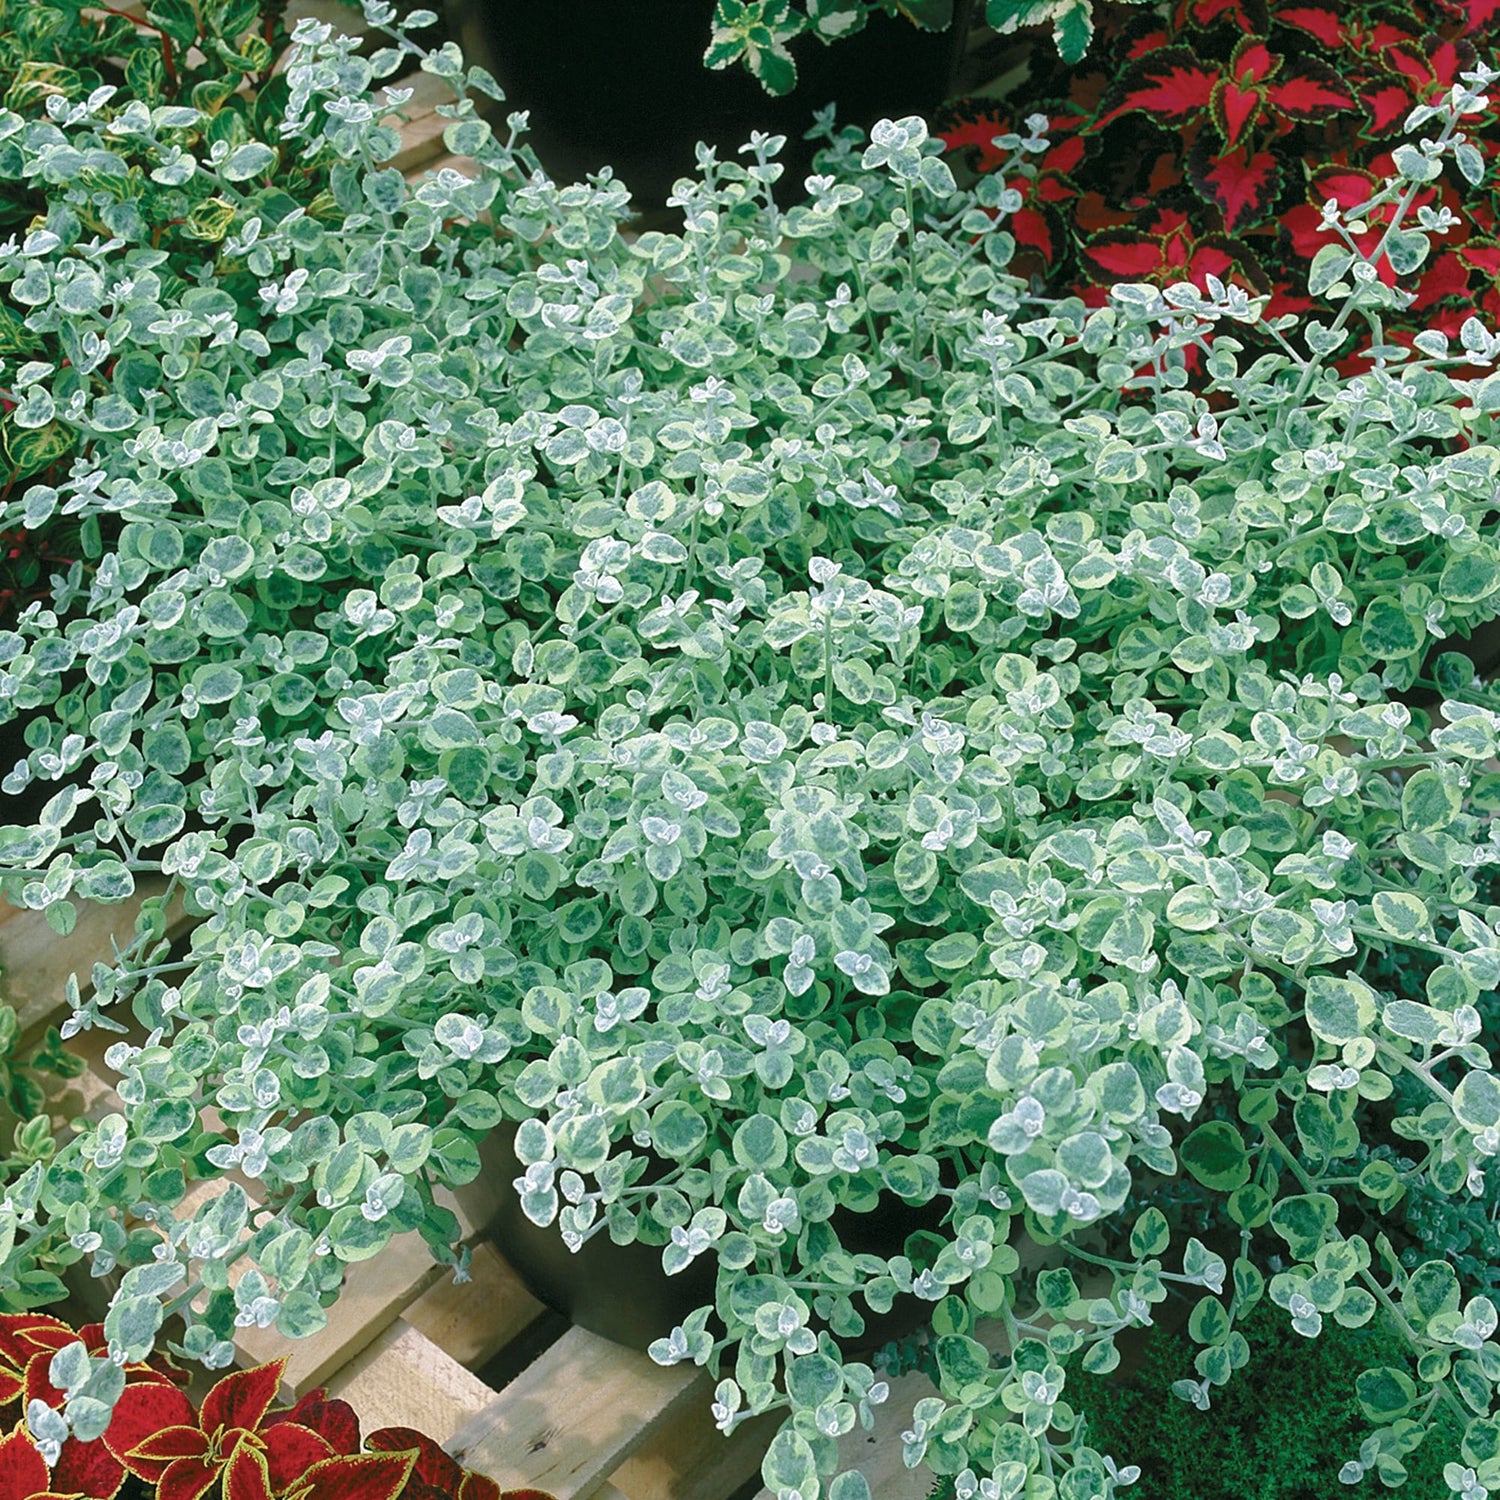 Licorice plant Helichrysum